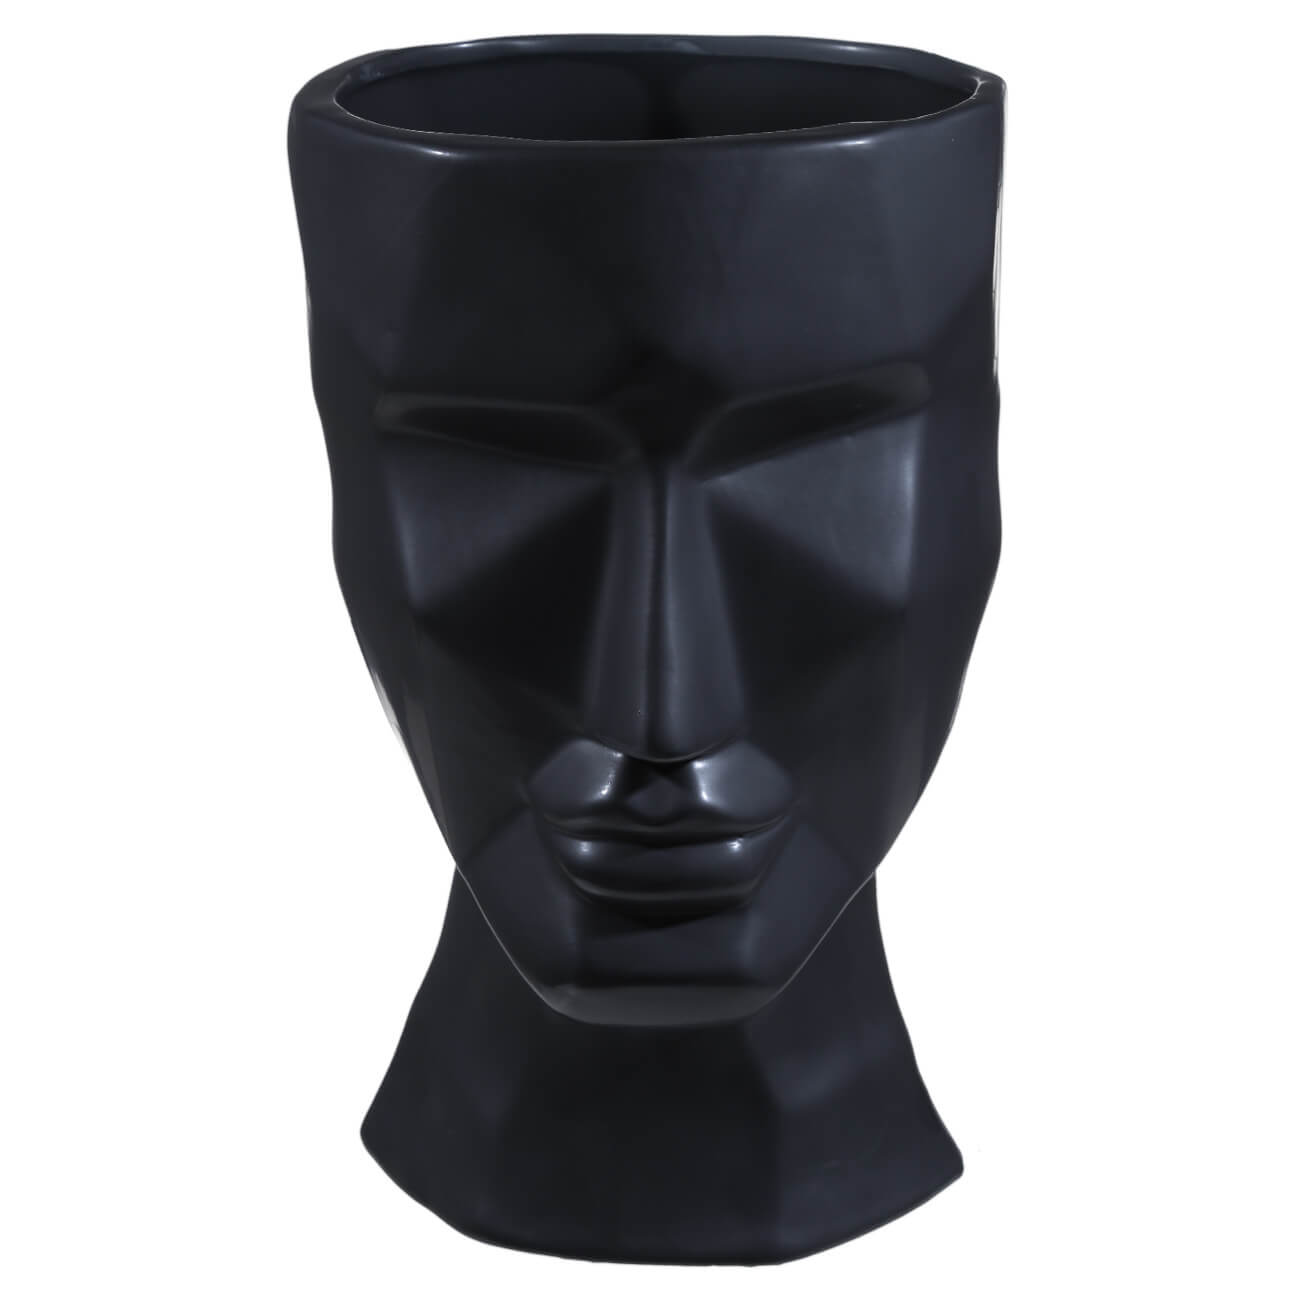 Ваза для цветов, 29 см, декоративная, керамика, черная, Графичное лицо, Face coraline ваза s